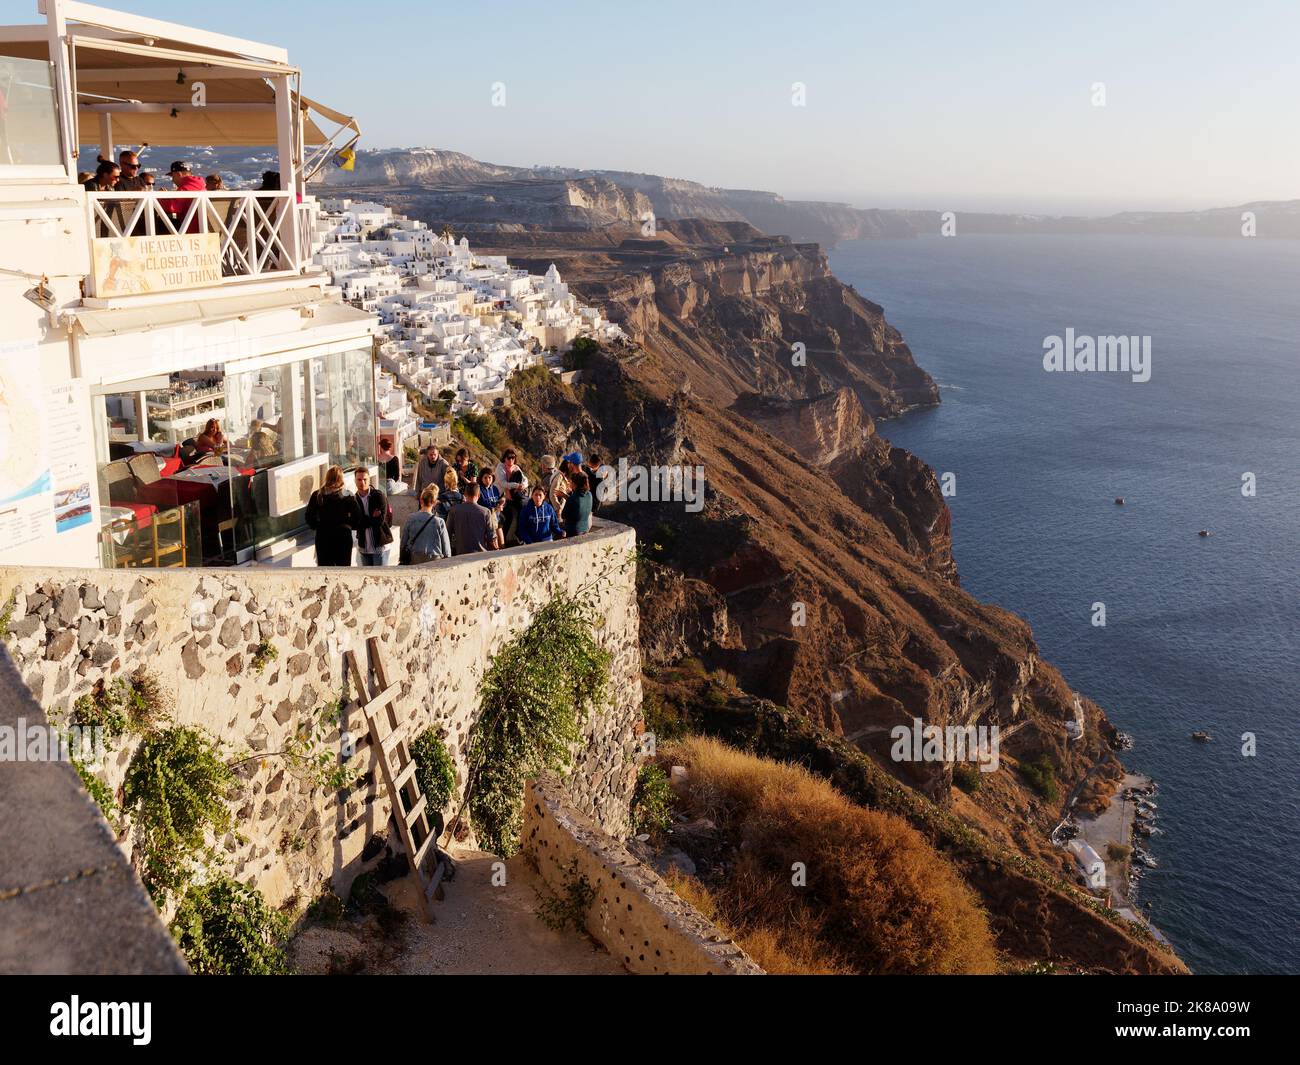 Restaurant avec vue sur la caldeira dans la ville de Fira au coucher du soleil. Île grecque des Cyclades de Santorin dans la mer Égée Banque D'Images